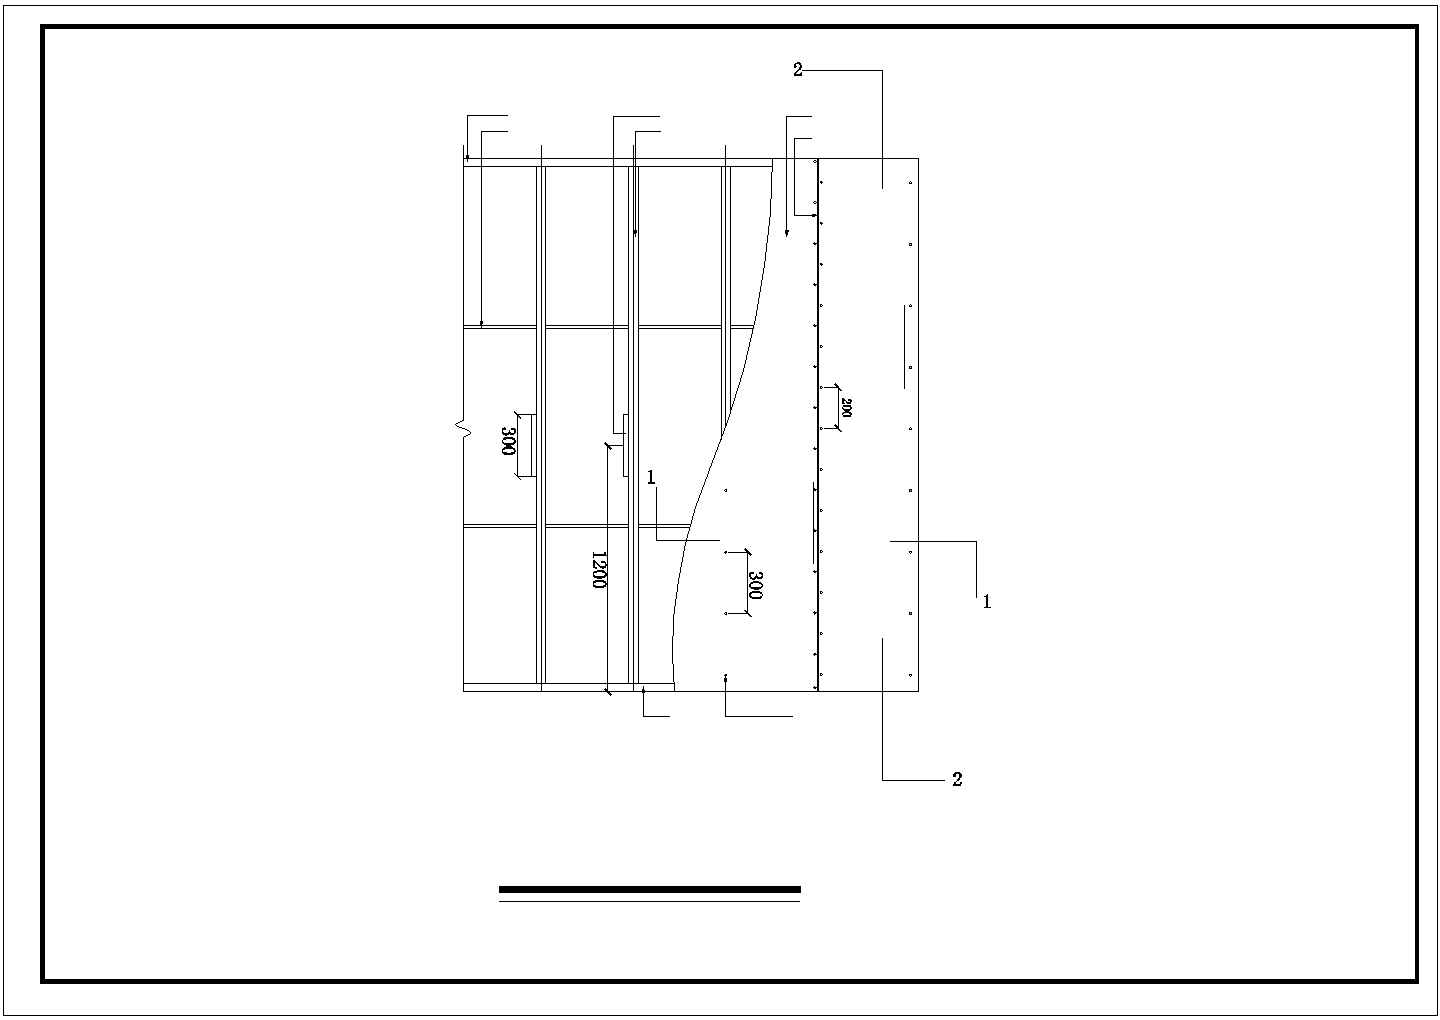 【常州】某装饰公司住宅楼全套装修设计施工图(含过道隔断立面图)